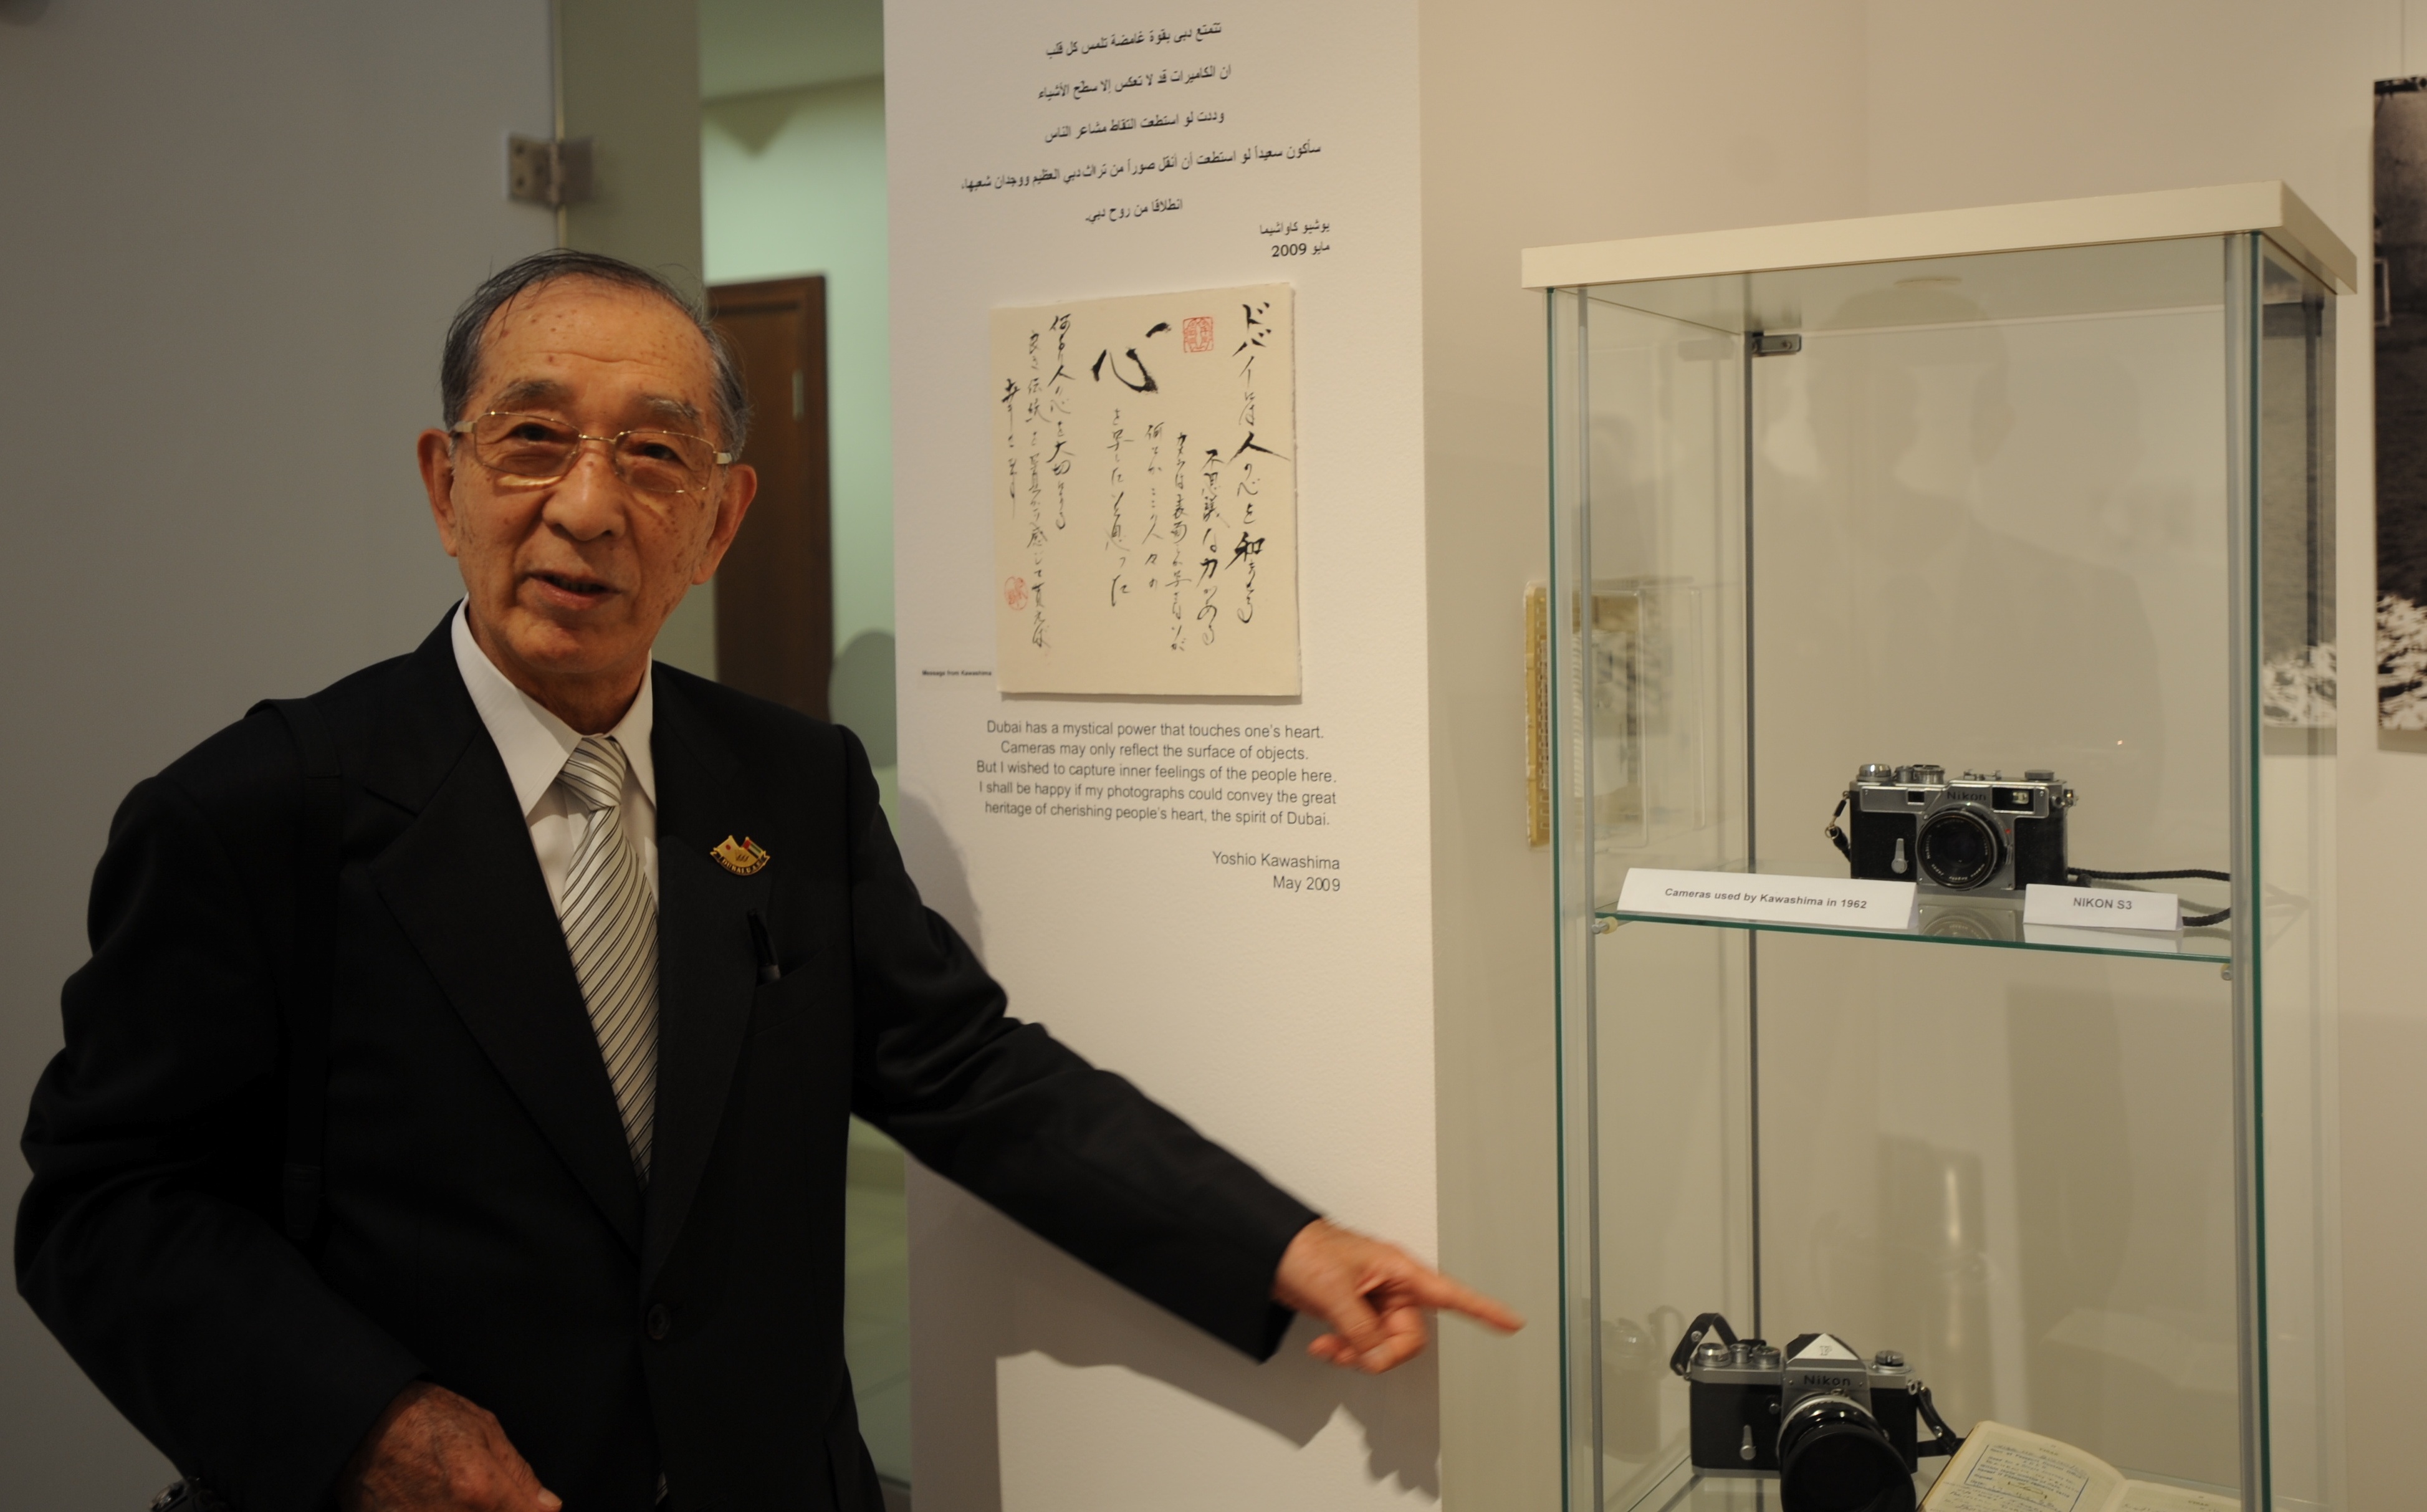 Jieun Lee/CNN. Photographer Kawashima points to his cameras (Nikon S and Nikon F2) and his 1962 passport